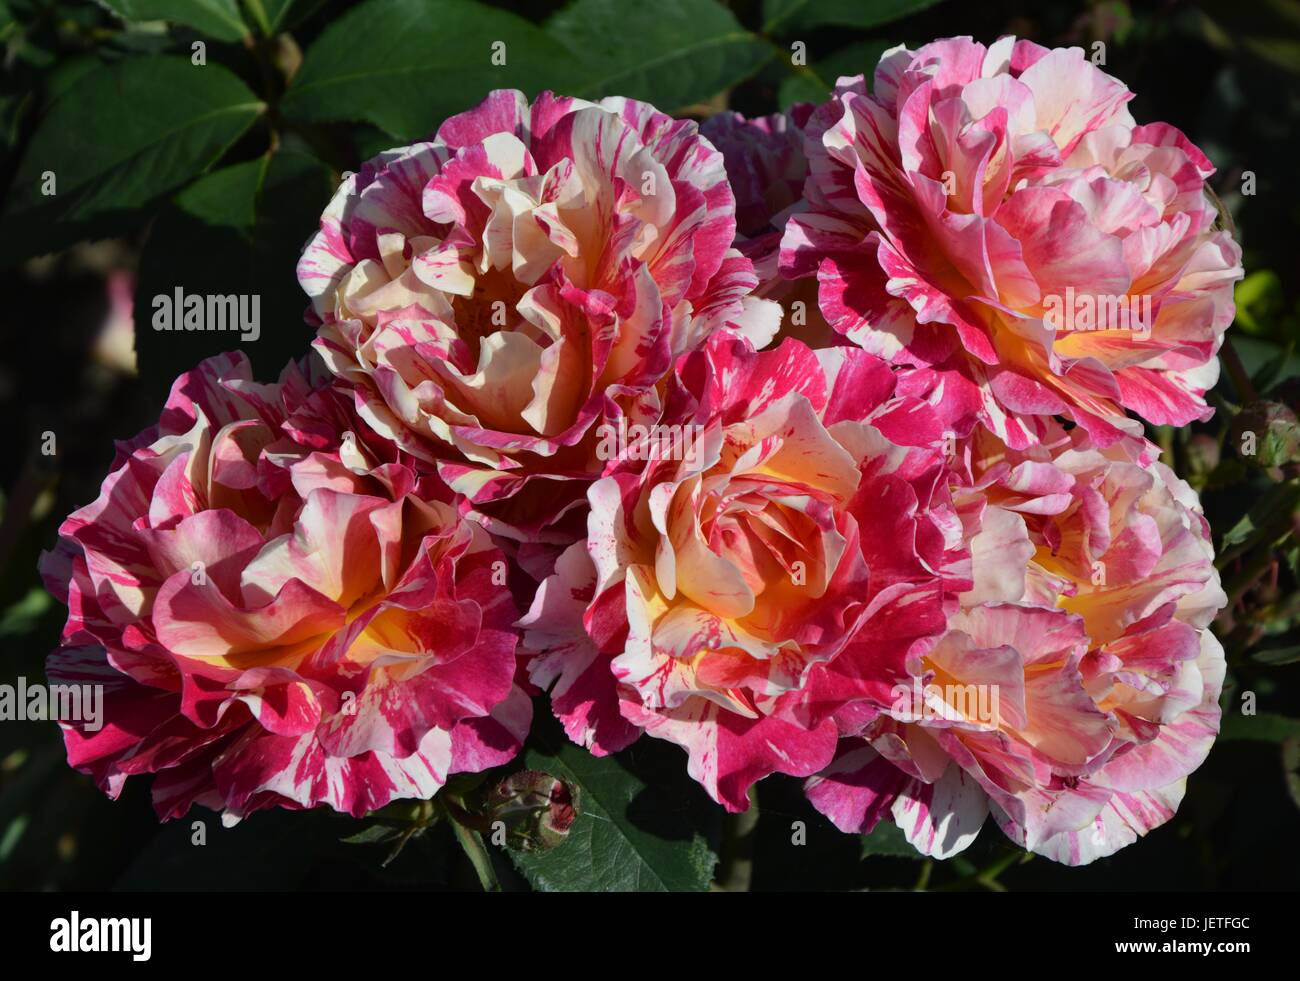 Roses impresiones de la IGA 2017 de Berlín, la Exposición Internacional de Jardinería Berlín desde el 18 de junio de 2017, Alemania Foto de stock